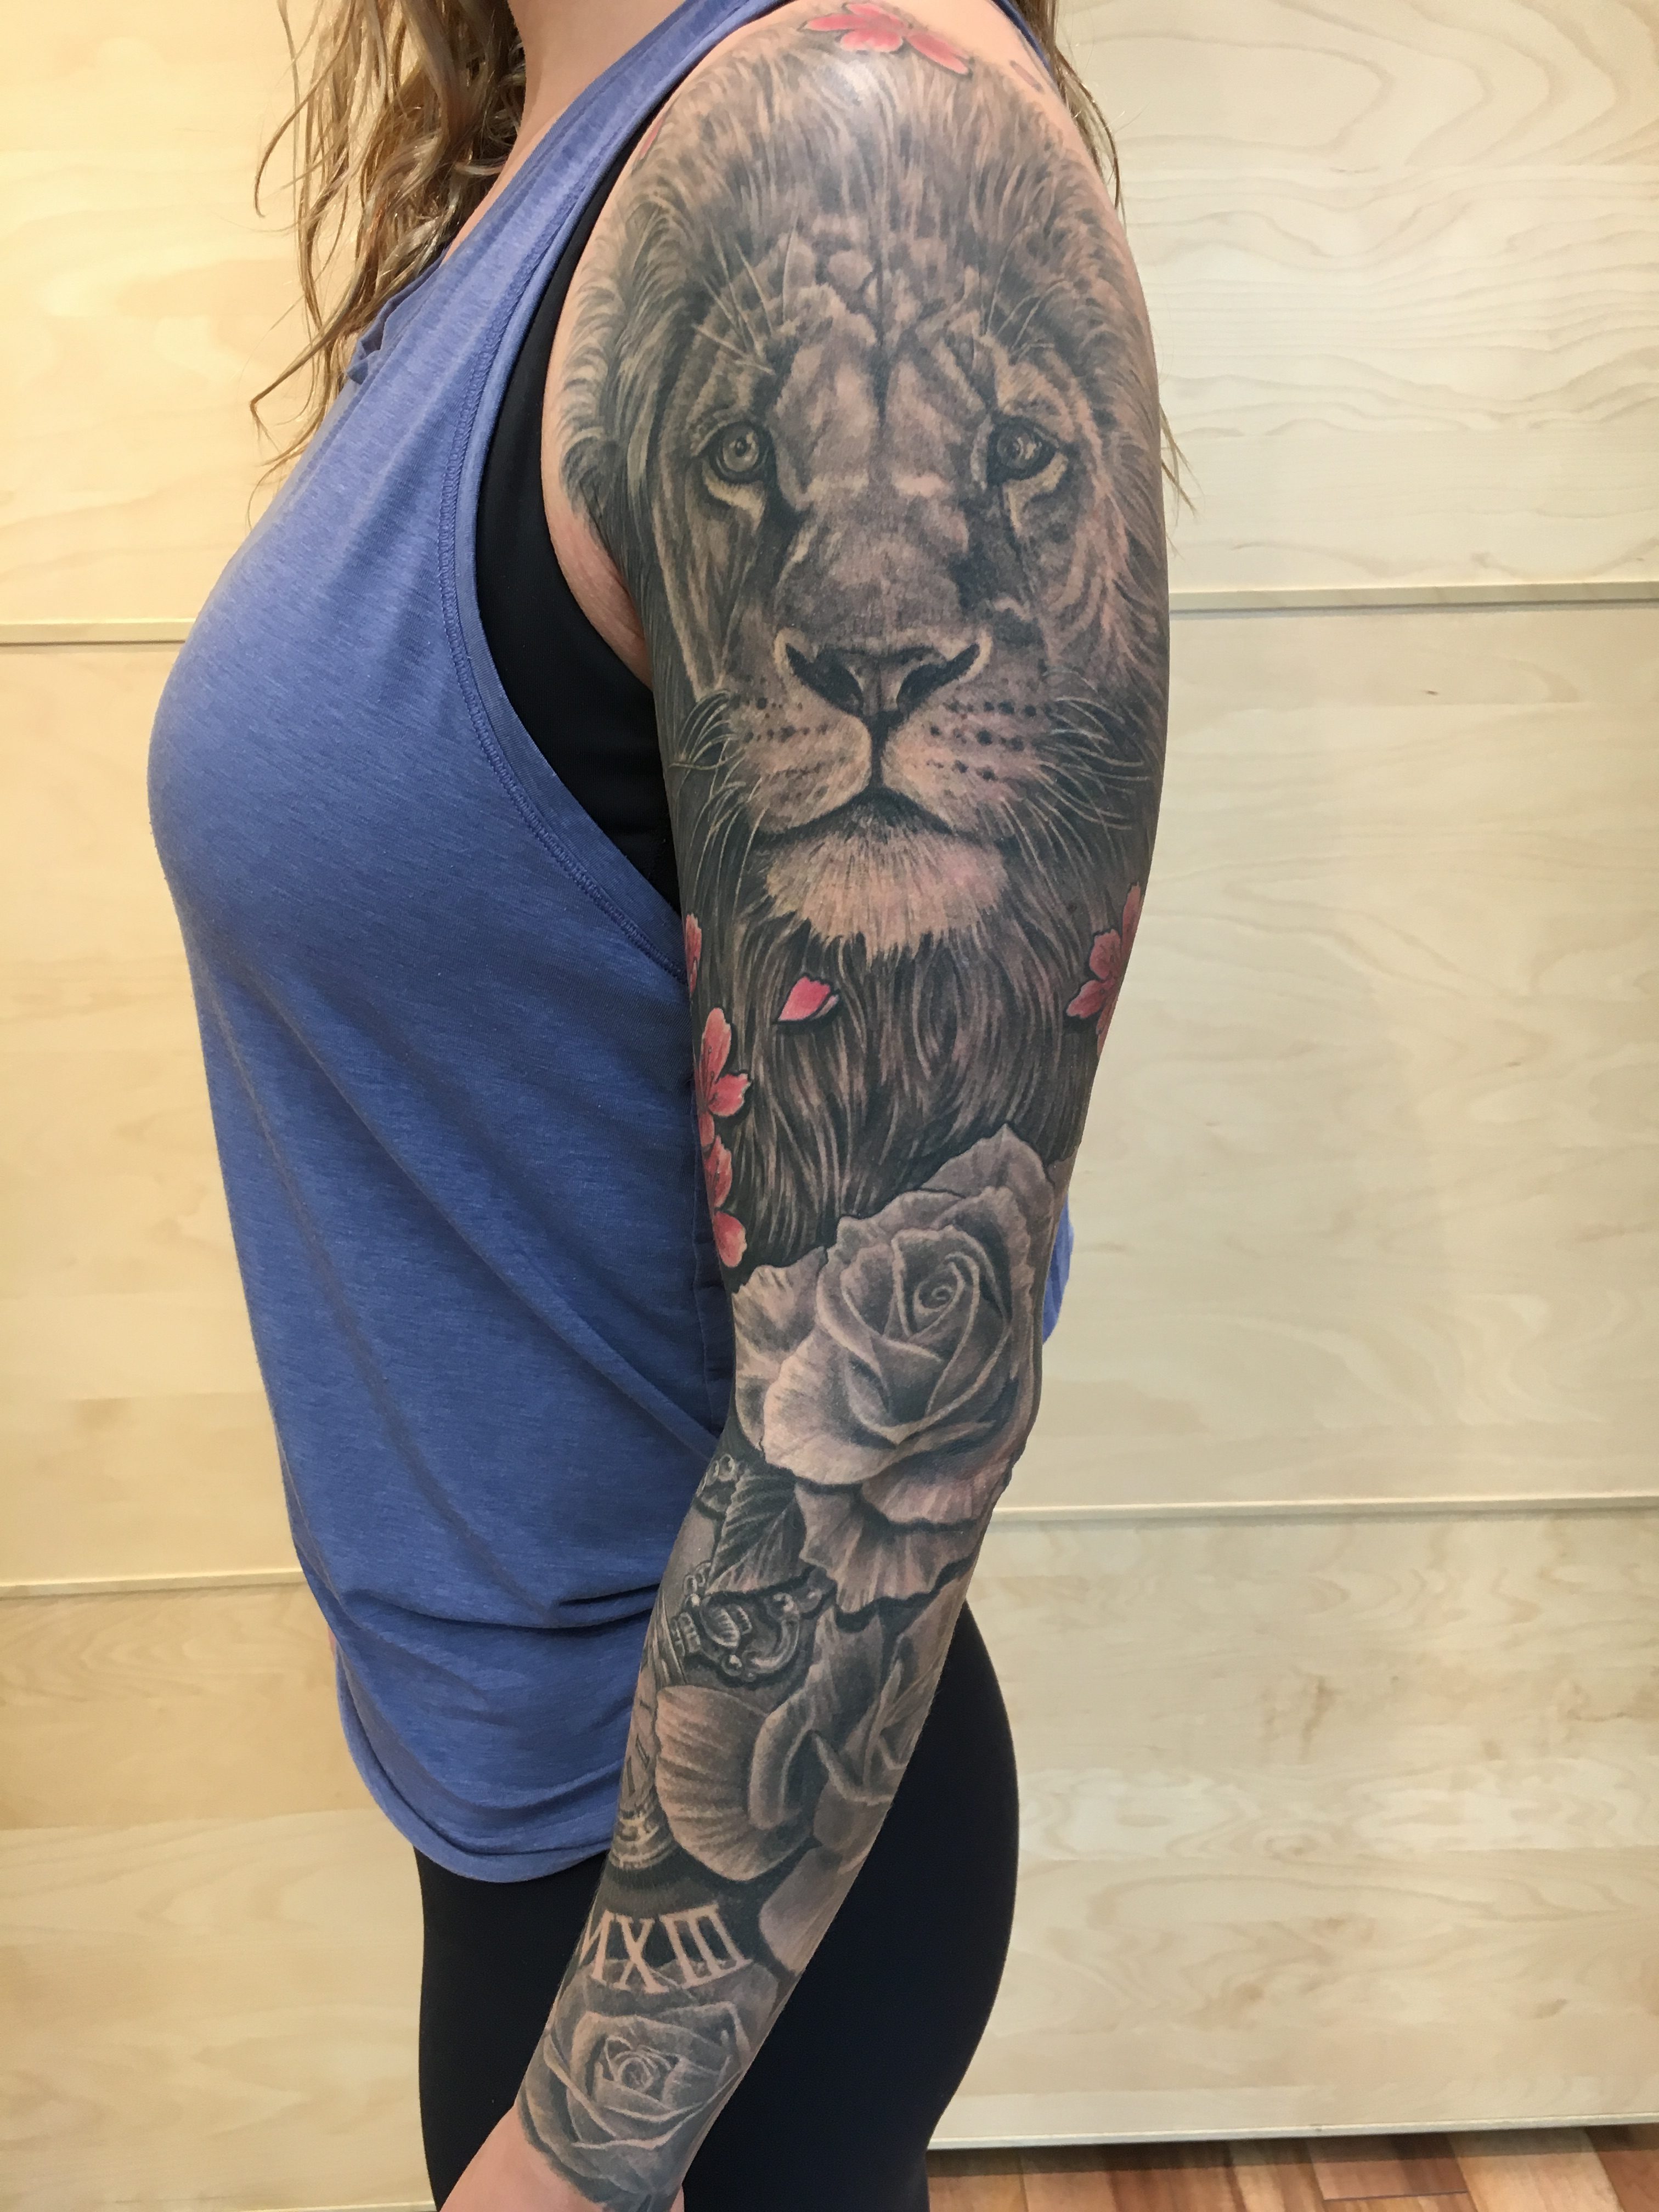 Troy Semkiw Tattoo 2019 Okanagan Tattoo Show & Brewfest Artist